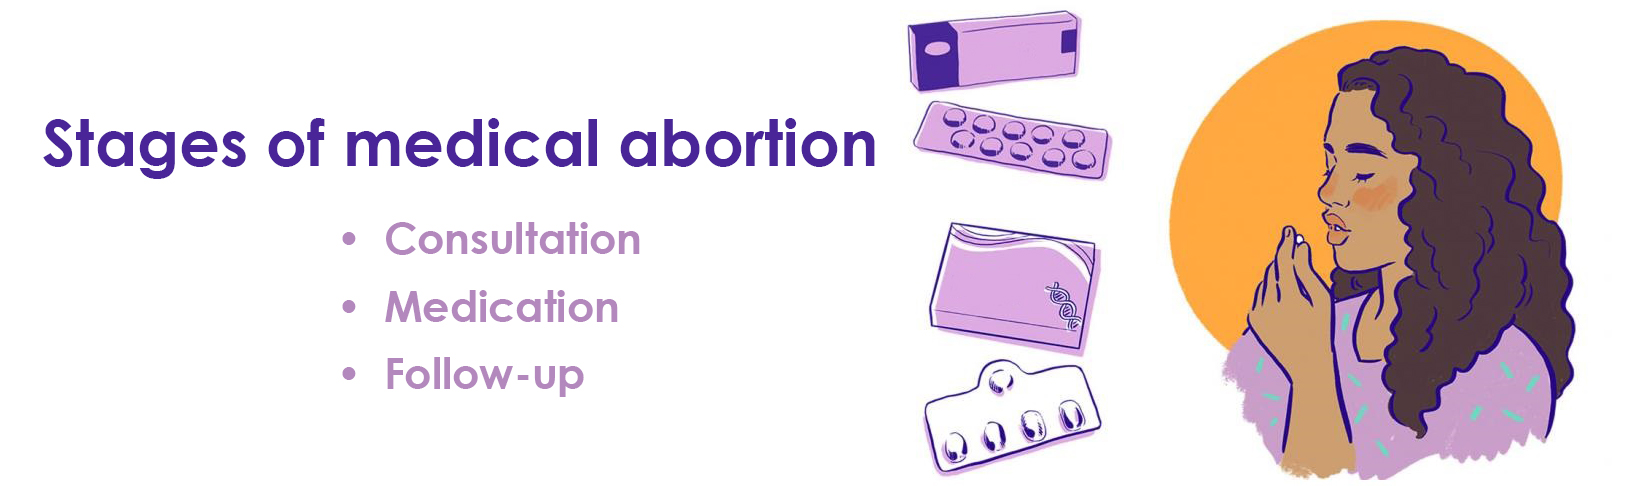 Етапи медикантозного аборту в Харкові